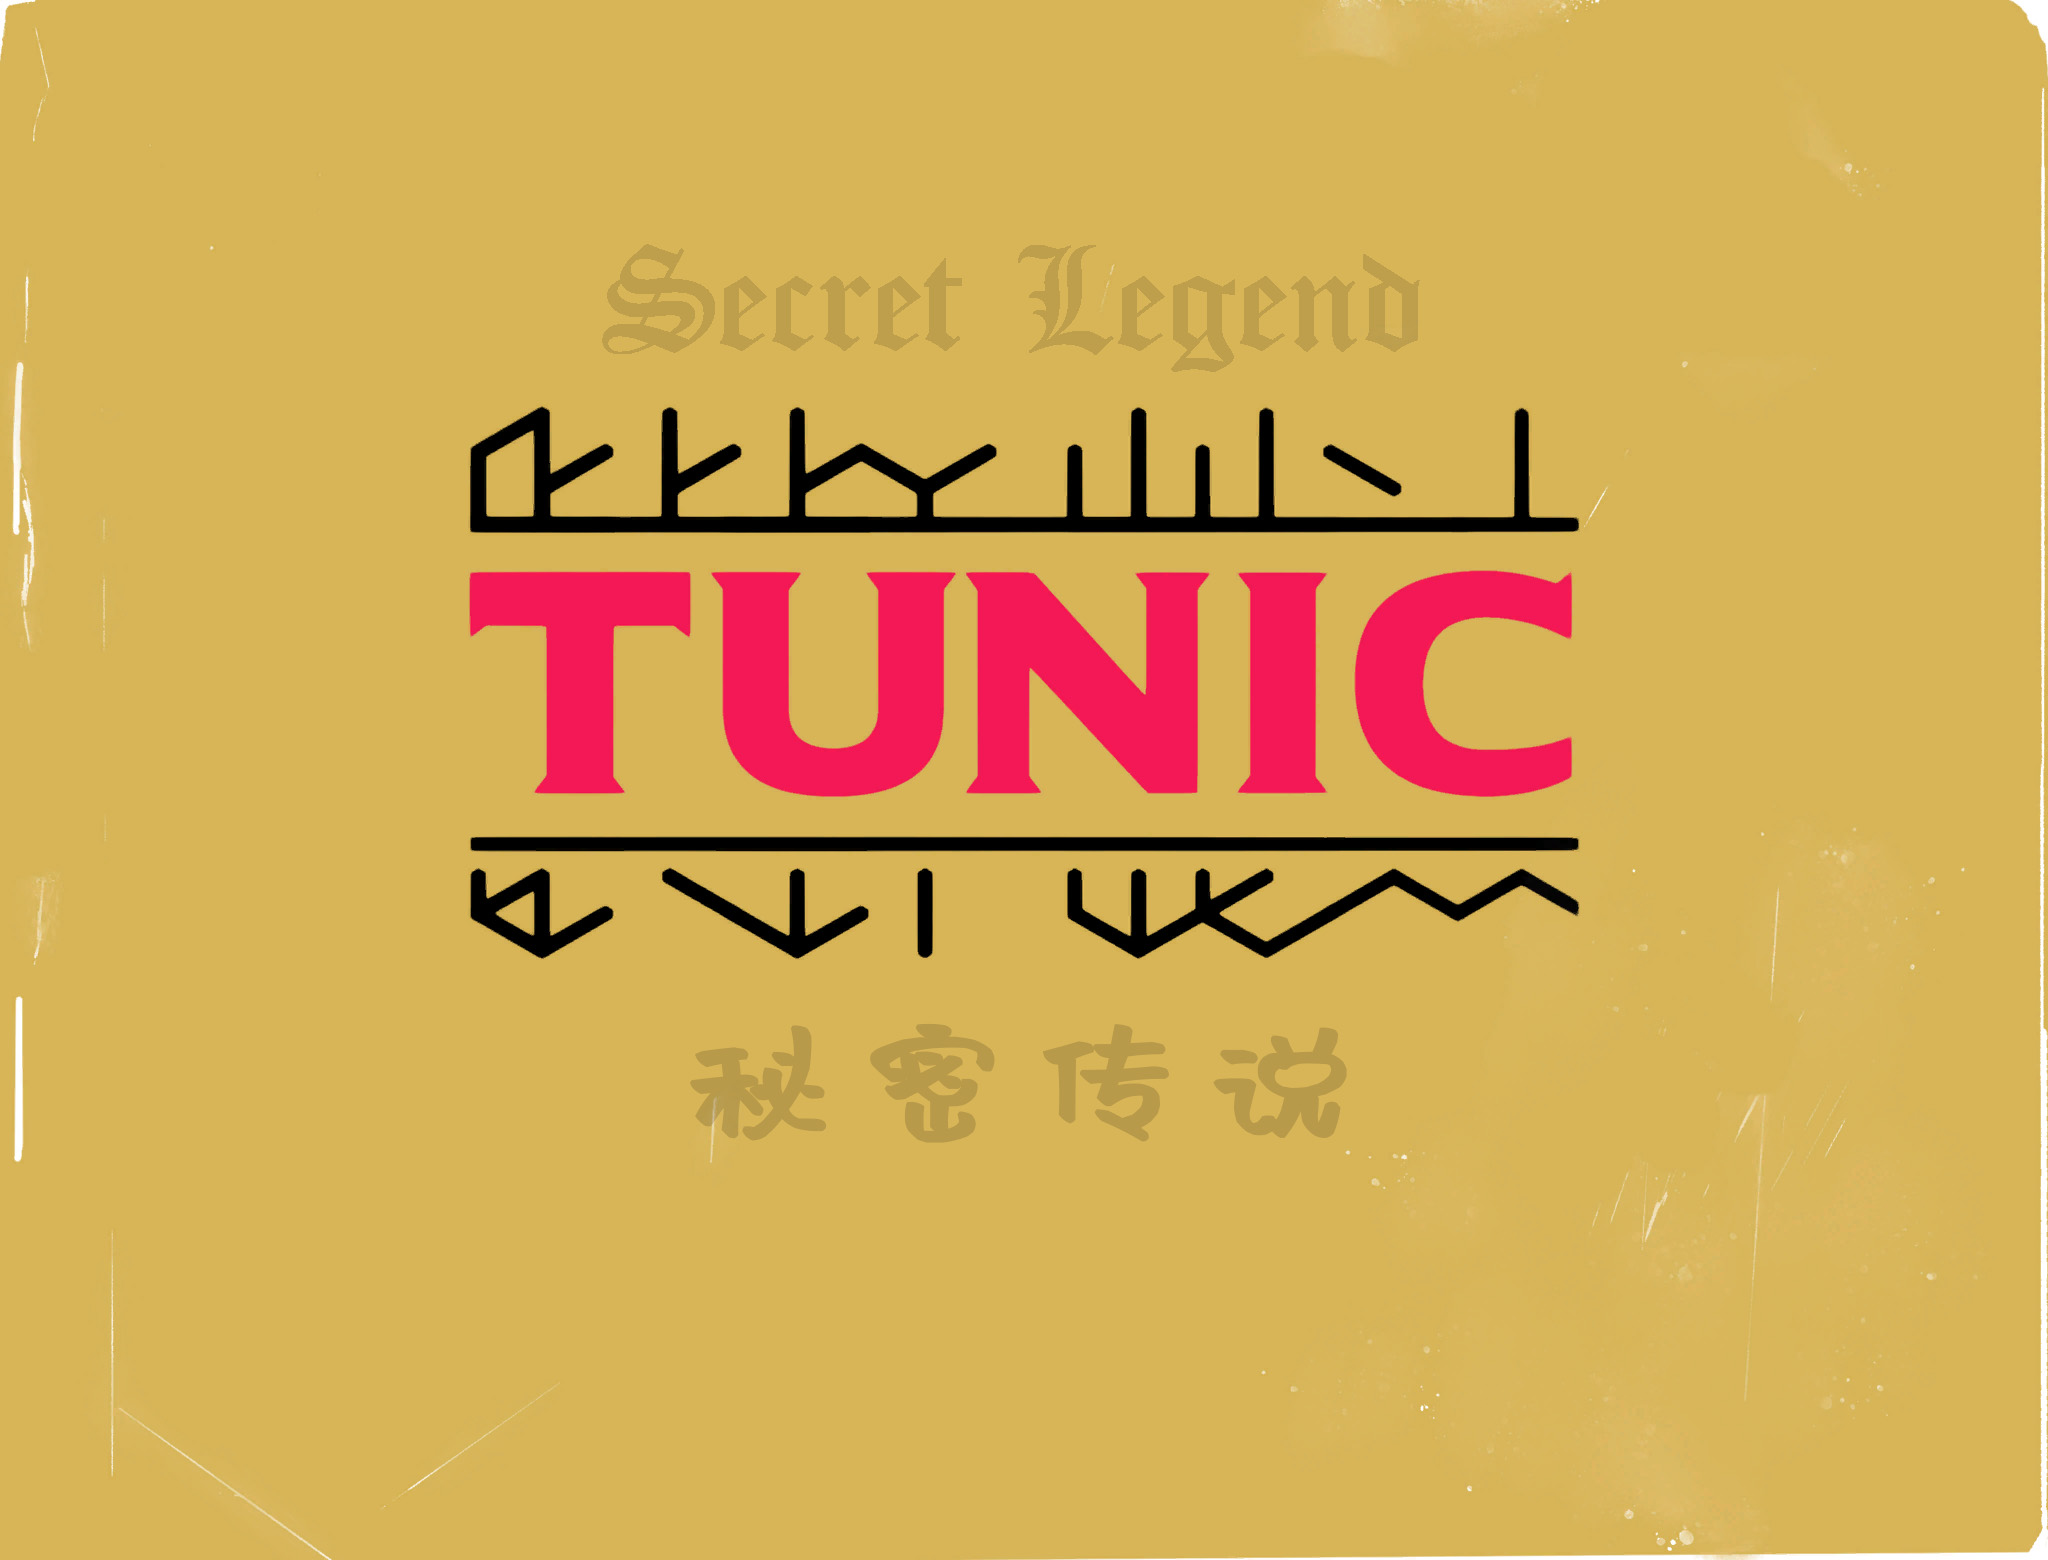 TUNIC image 1